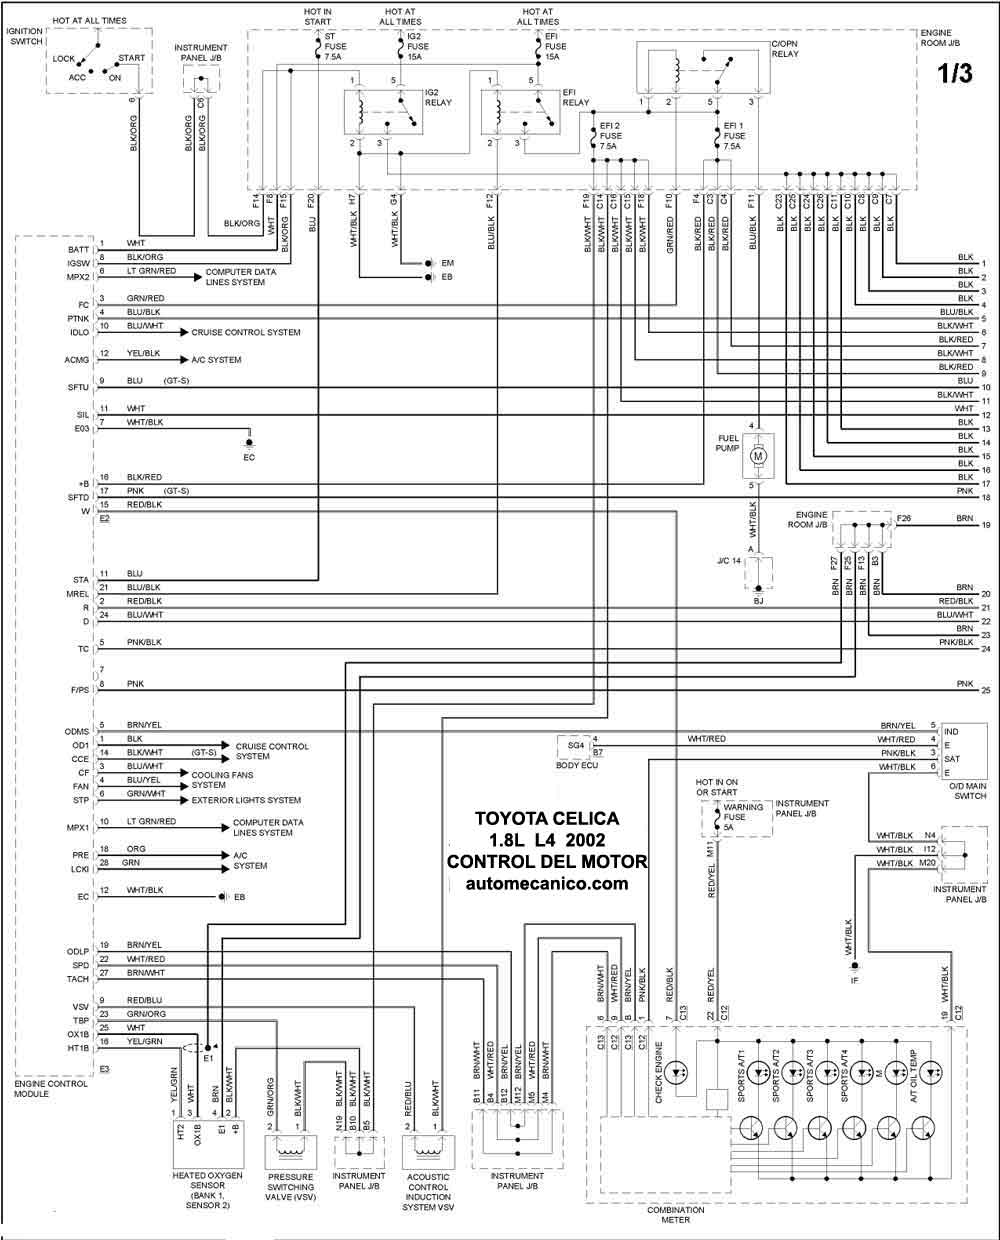 Toyota - Diagramas control del motor 2002 - Graphics - Esquemas | Vehiculos  - Motores - Componentes | Mecanica automotriz